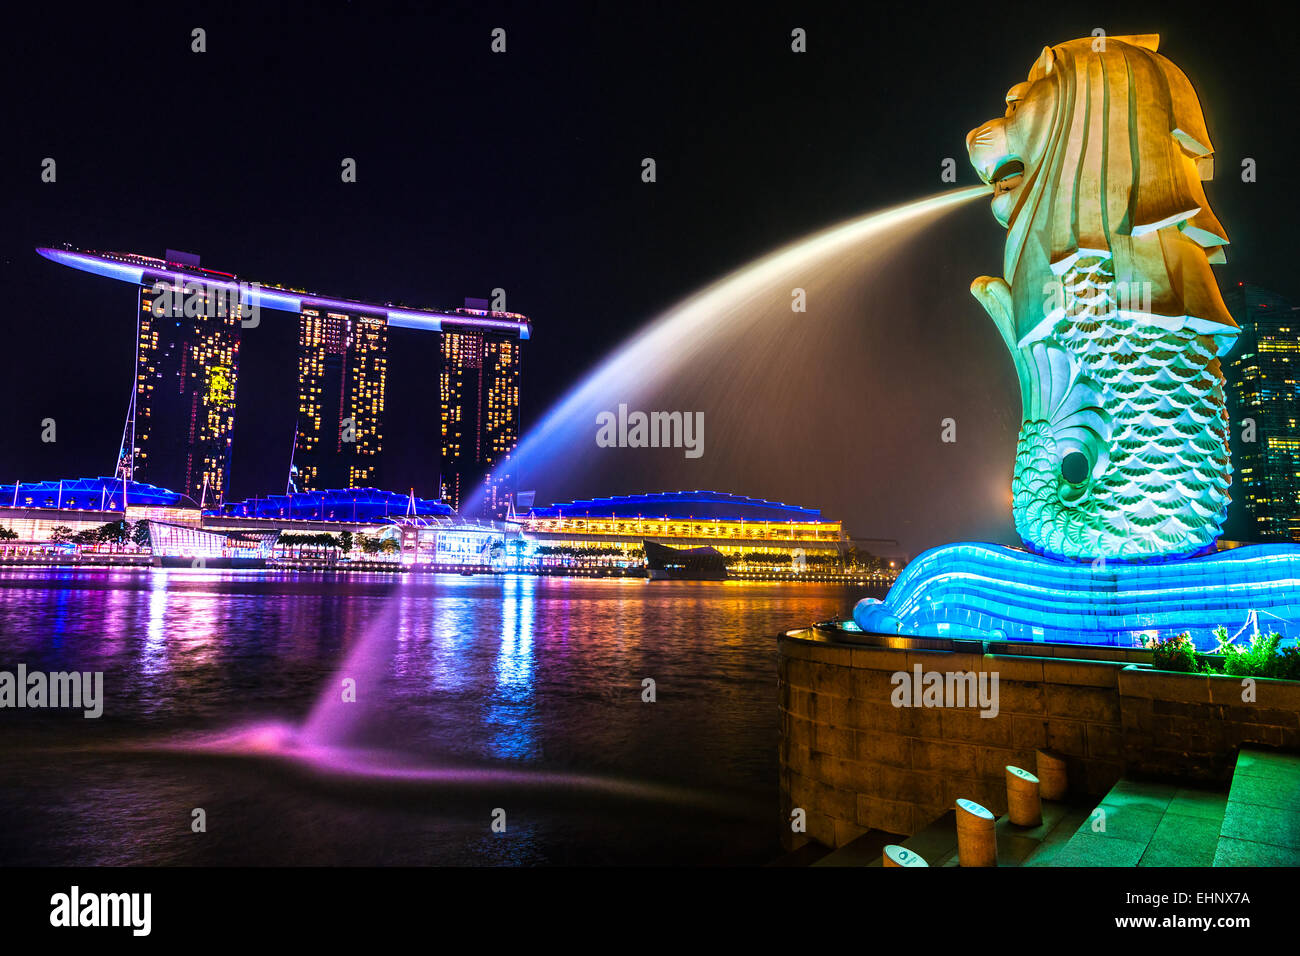 Singapour - 19 mars : le Merlion et le Marina Bay Sands Resort Hotel, présenté comme le plus cher du monde casino autonome p Banque D'Images